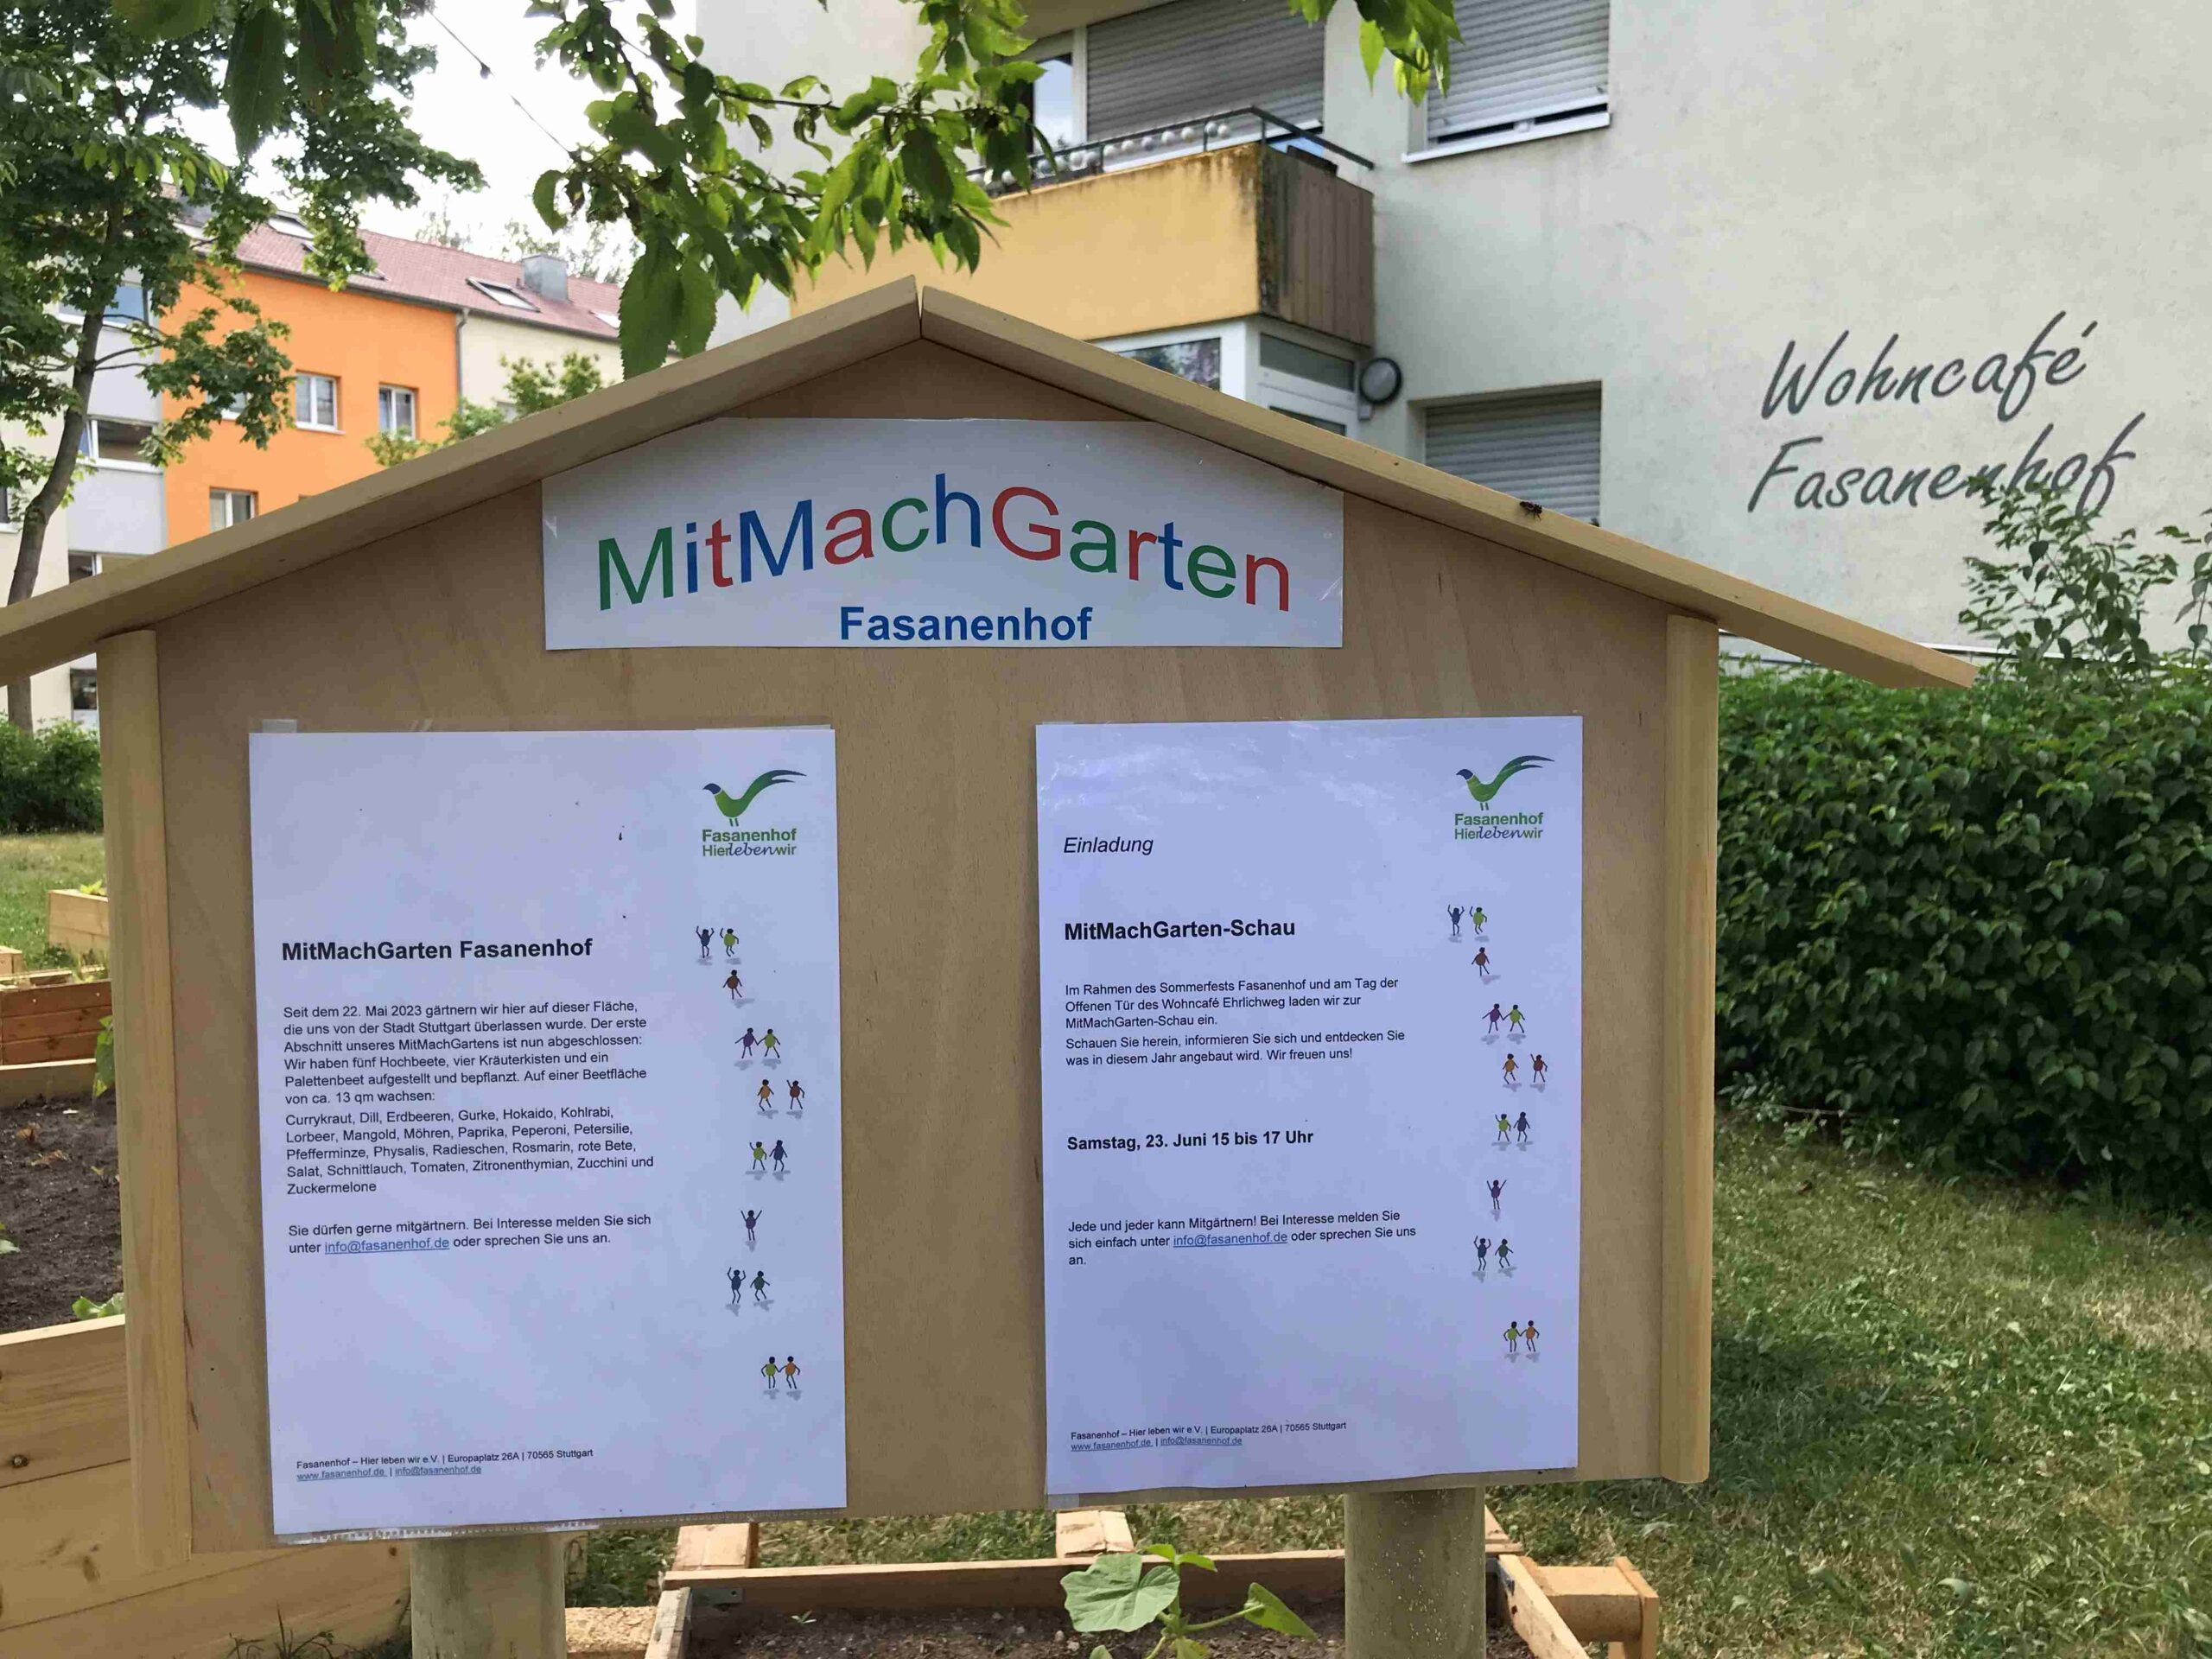 MitMachGarten Fasanenhof